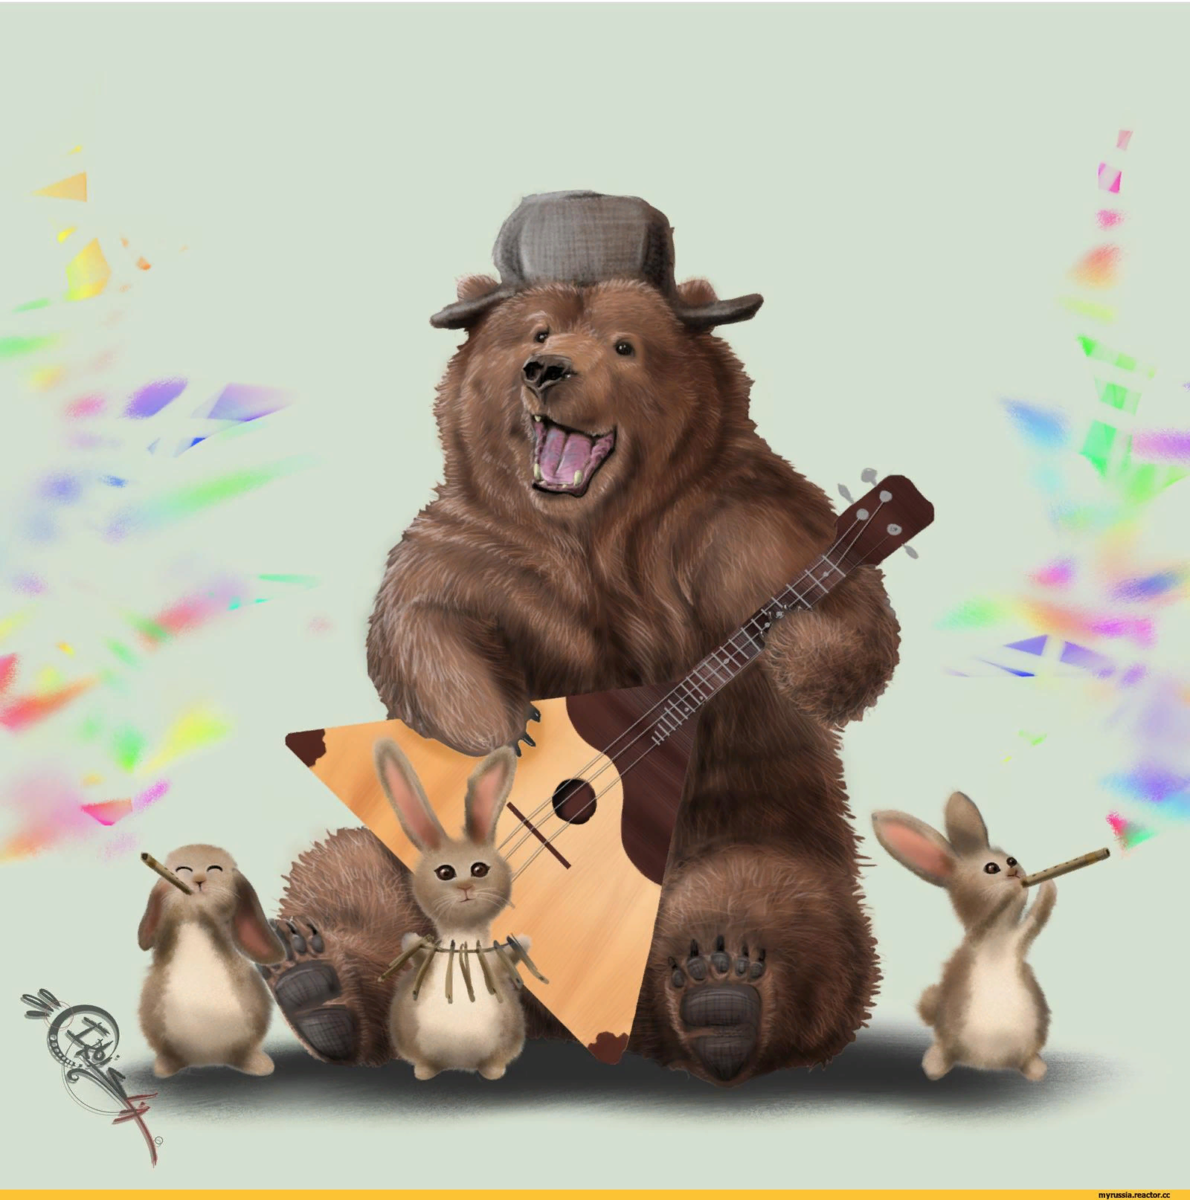 Русский в ушанке с балалайкой и медведем. Медведь балу.